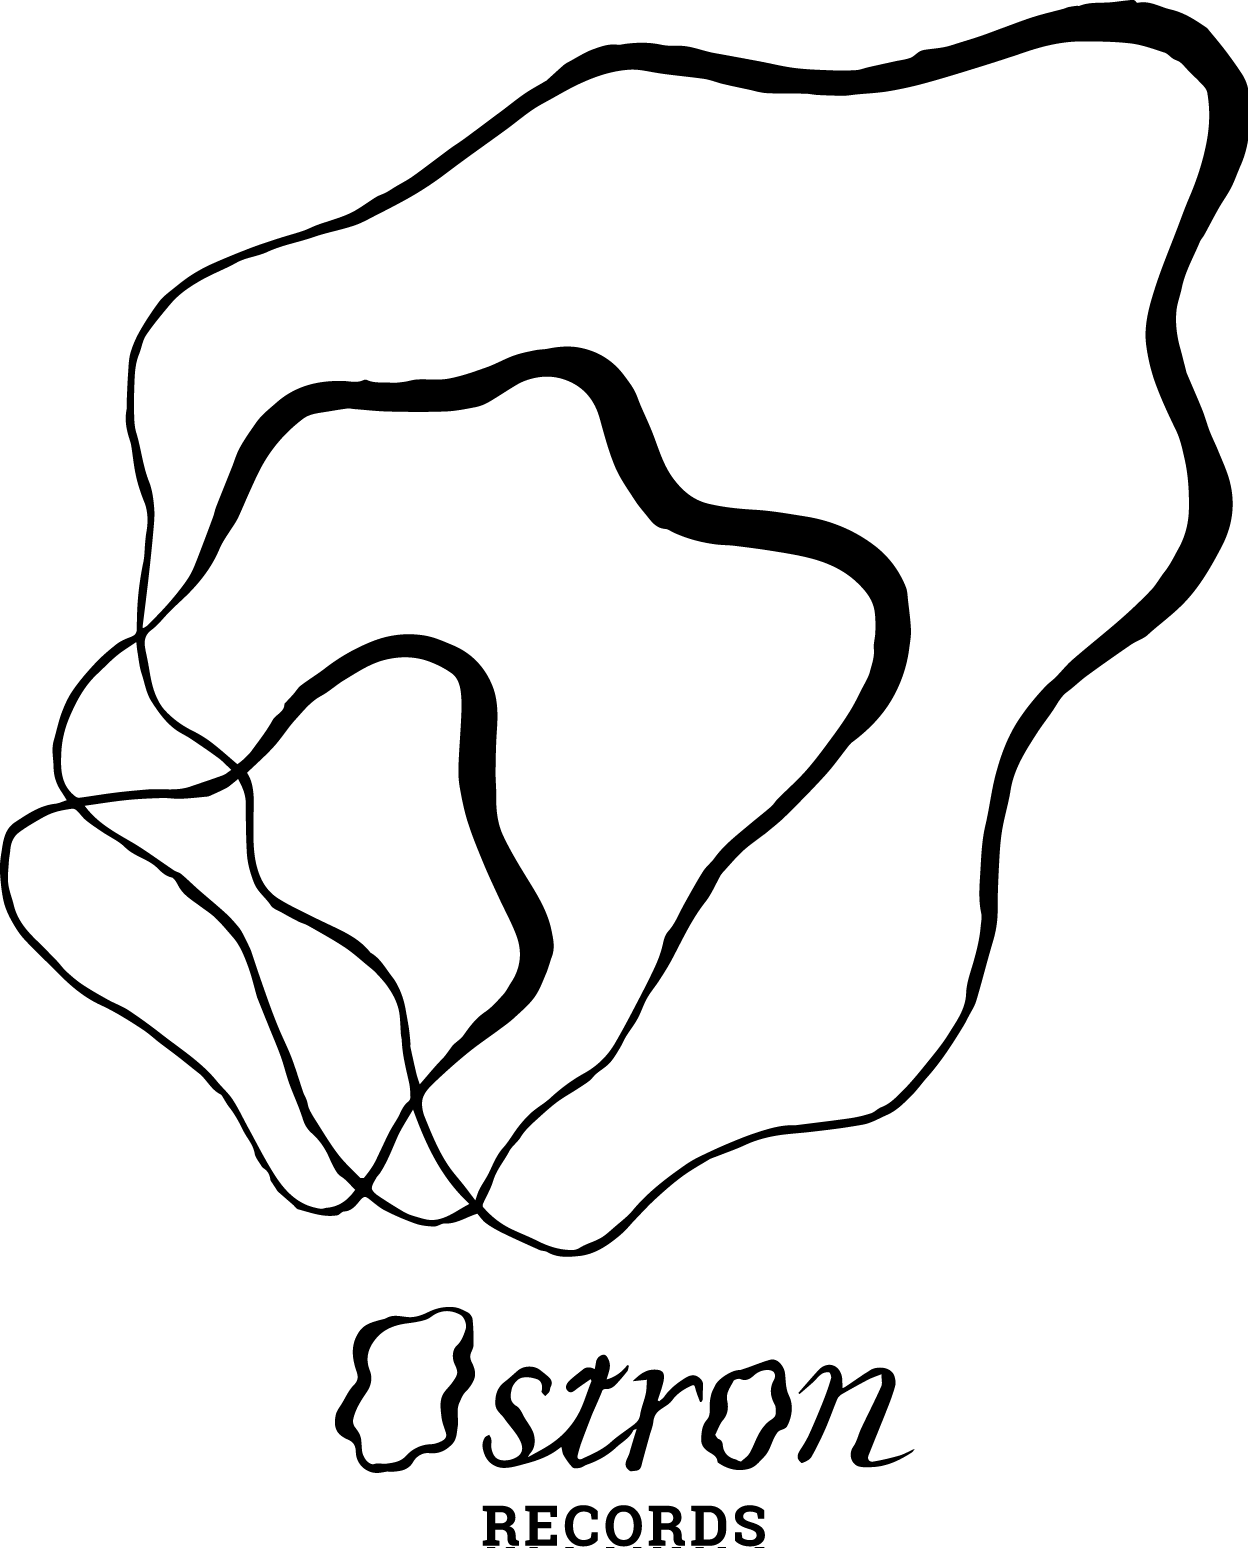 logo-full-black.png